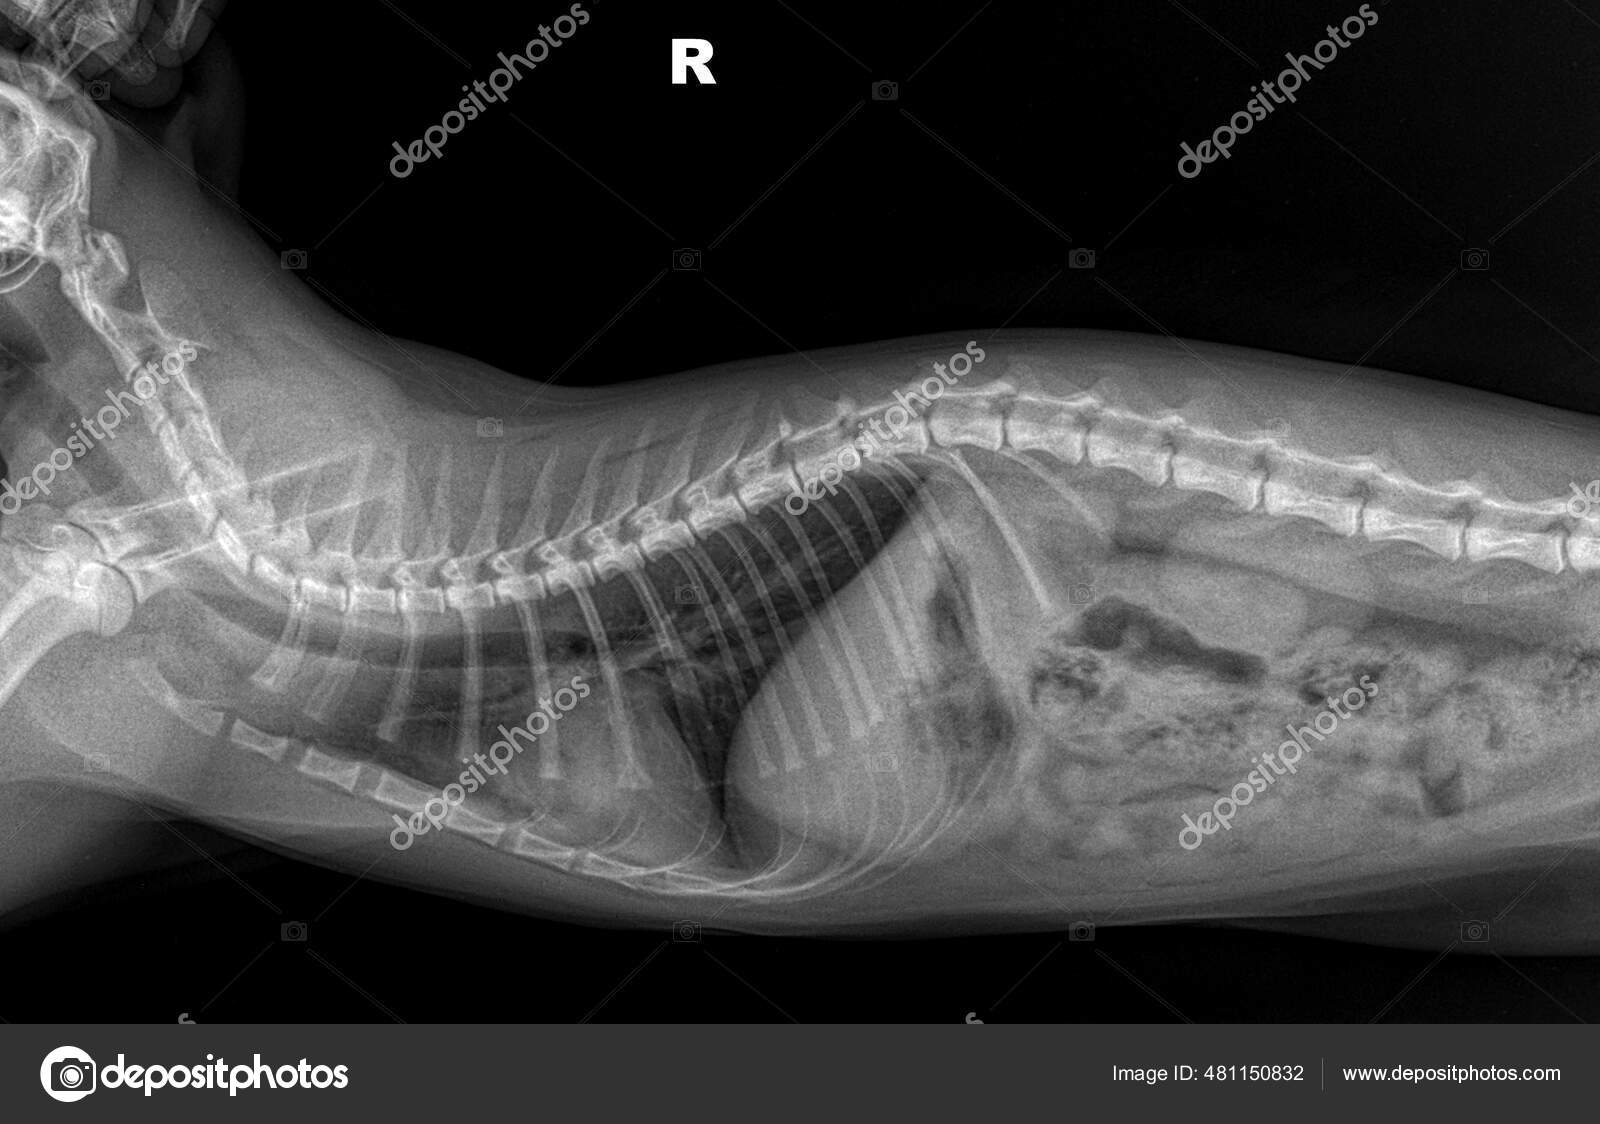 X-quang ngực mèo nền đen phía bên phải - Tomography (Vietnamese for tomography): Bạn đã từng nghe về phương pháp chụp X-quang ngực để kiểm tra sức khỏe của mèo? Với X-quang ngực mèo nền đen phía bên phải - Tomography, bạn sẽ được chiêm ngưỡng phương pháp này qua hình ảnh sống động và chân thực nhất. Hãy đến và khám phá hình ảnh này để tìm hiểu thêm về sức khỏe của mèo nhà bạn nhé!